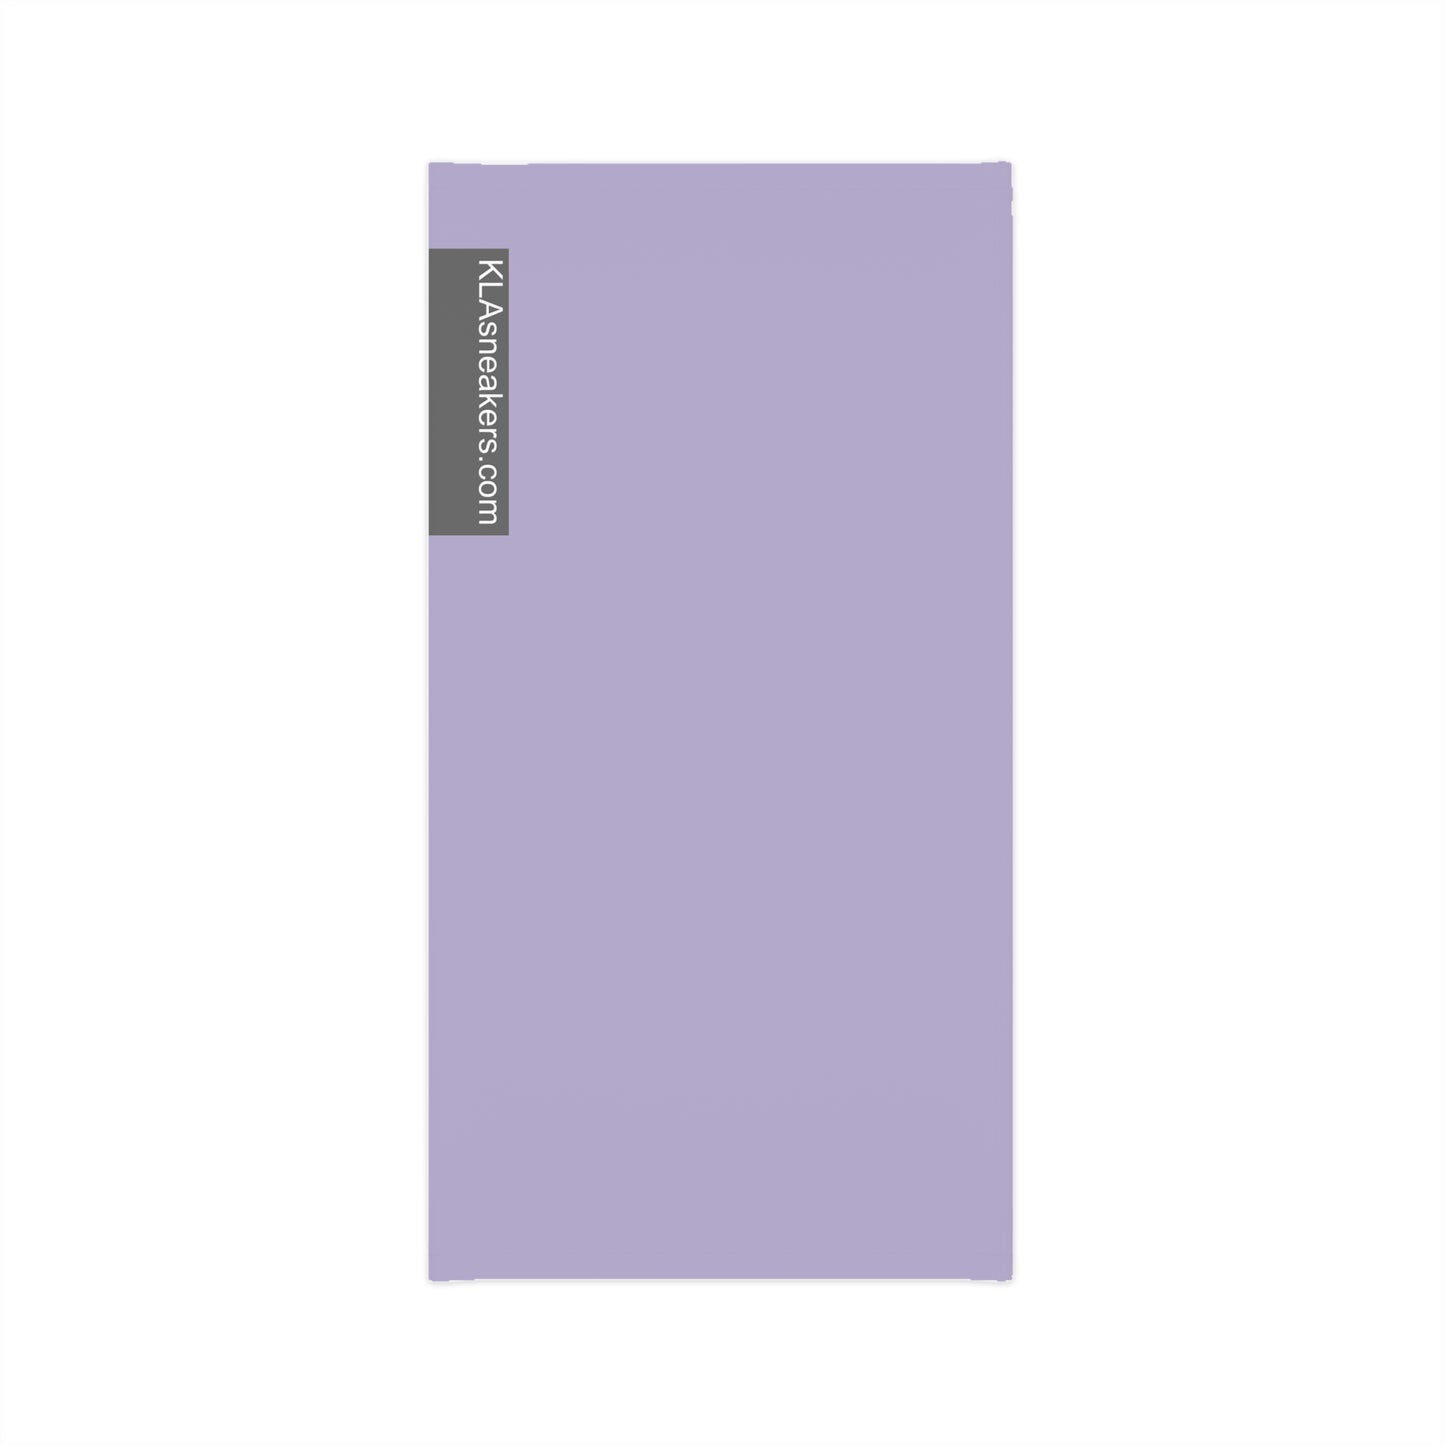 Lightweight Neck Gaiter - Lavender L